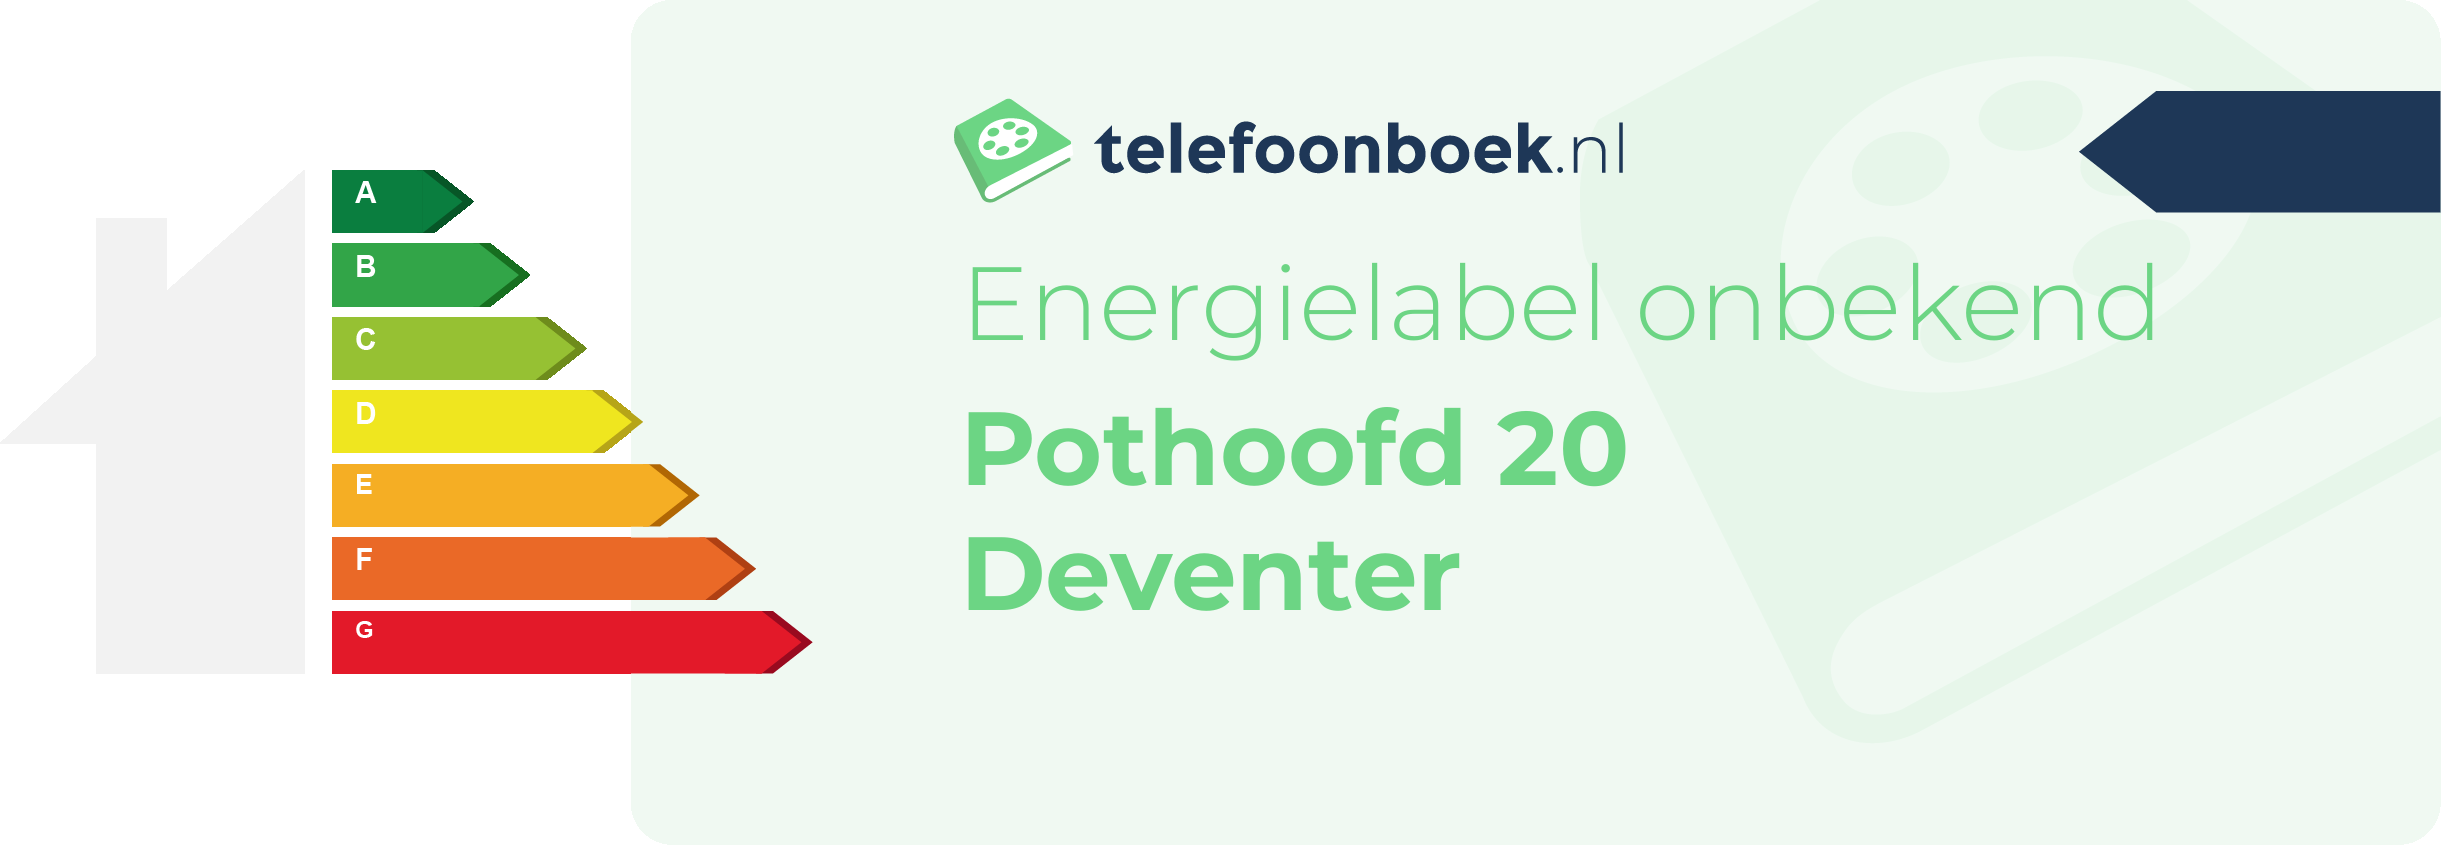 Energielabel Pothoofd 20 Deventer